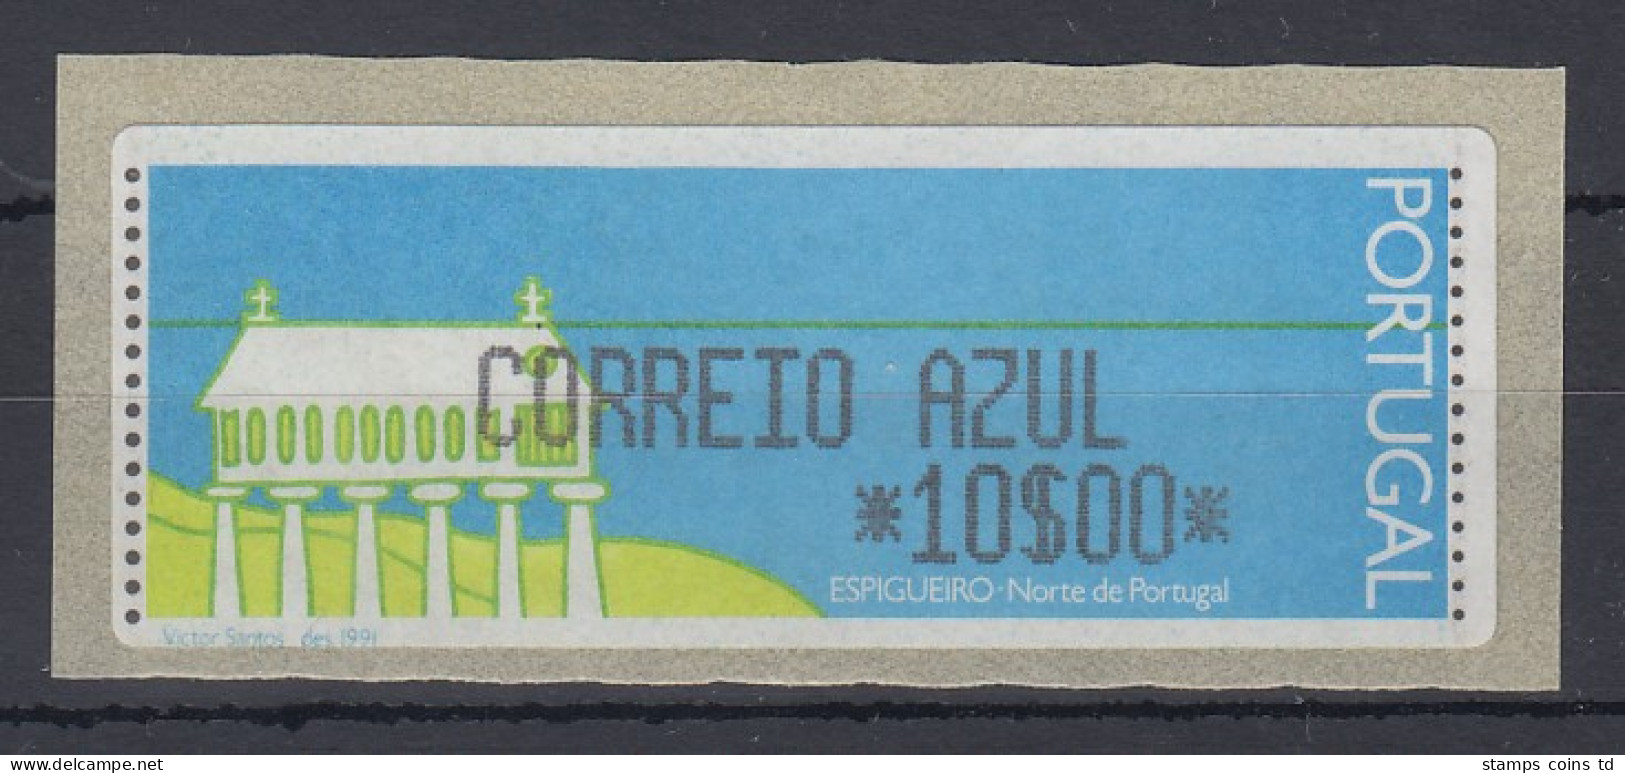 Portugal Monetel-LISA ATM Kornspeicher / Espigueiro, CORREIO AZUL 10 Esc.** - Machine Labels [ATM]